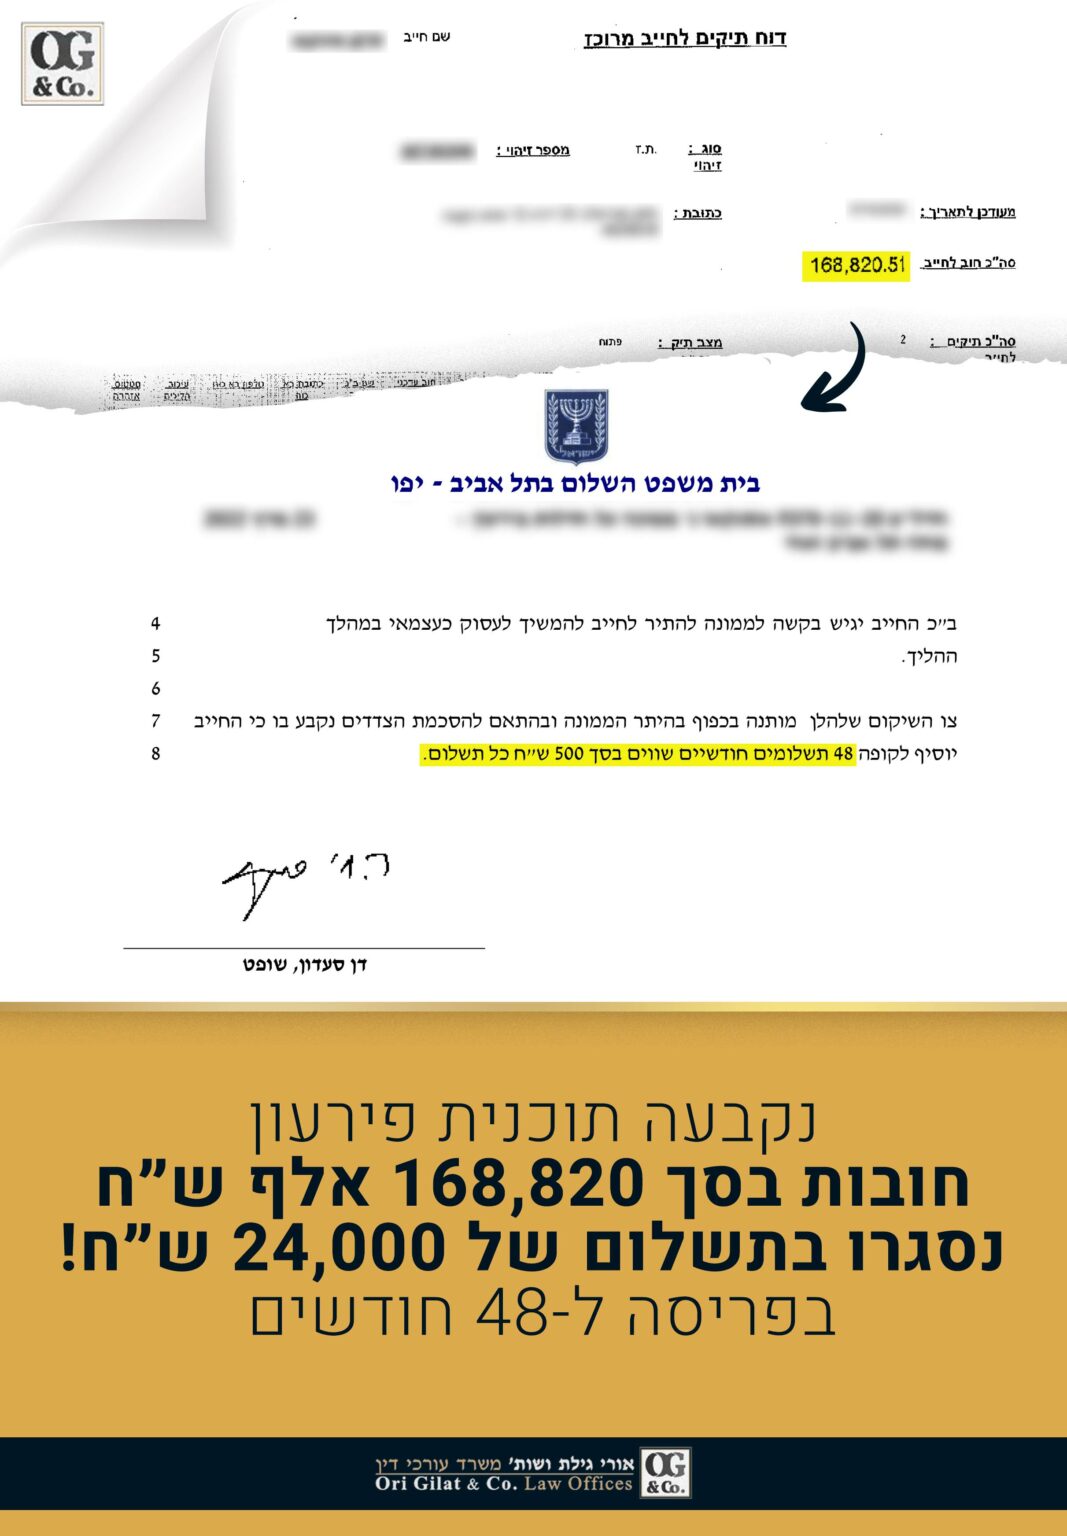 חובות בסך 168,820 אלף ש"ח נסגרו בתשלום של 24,000 ש"ח!